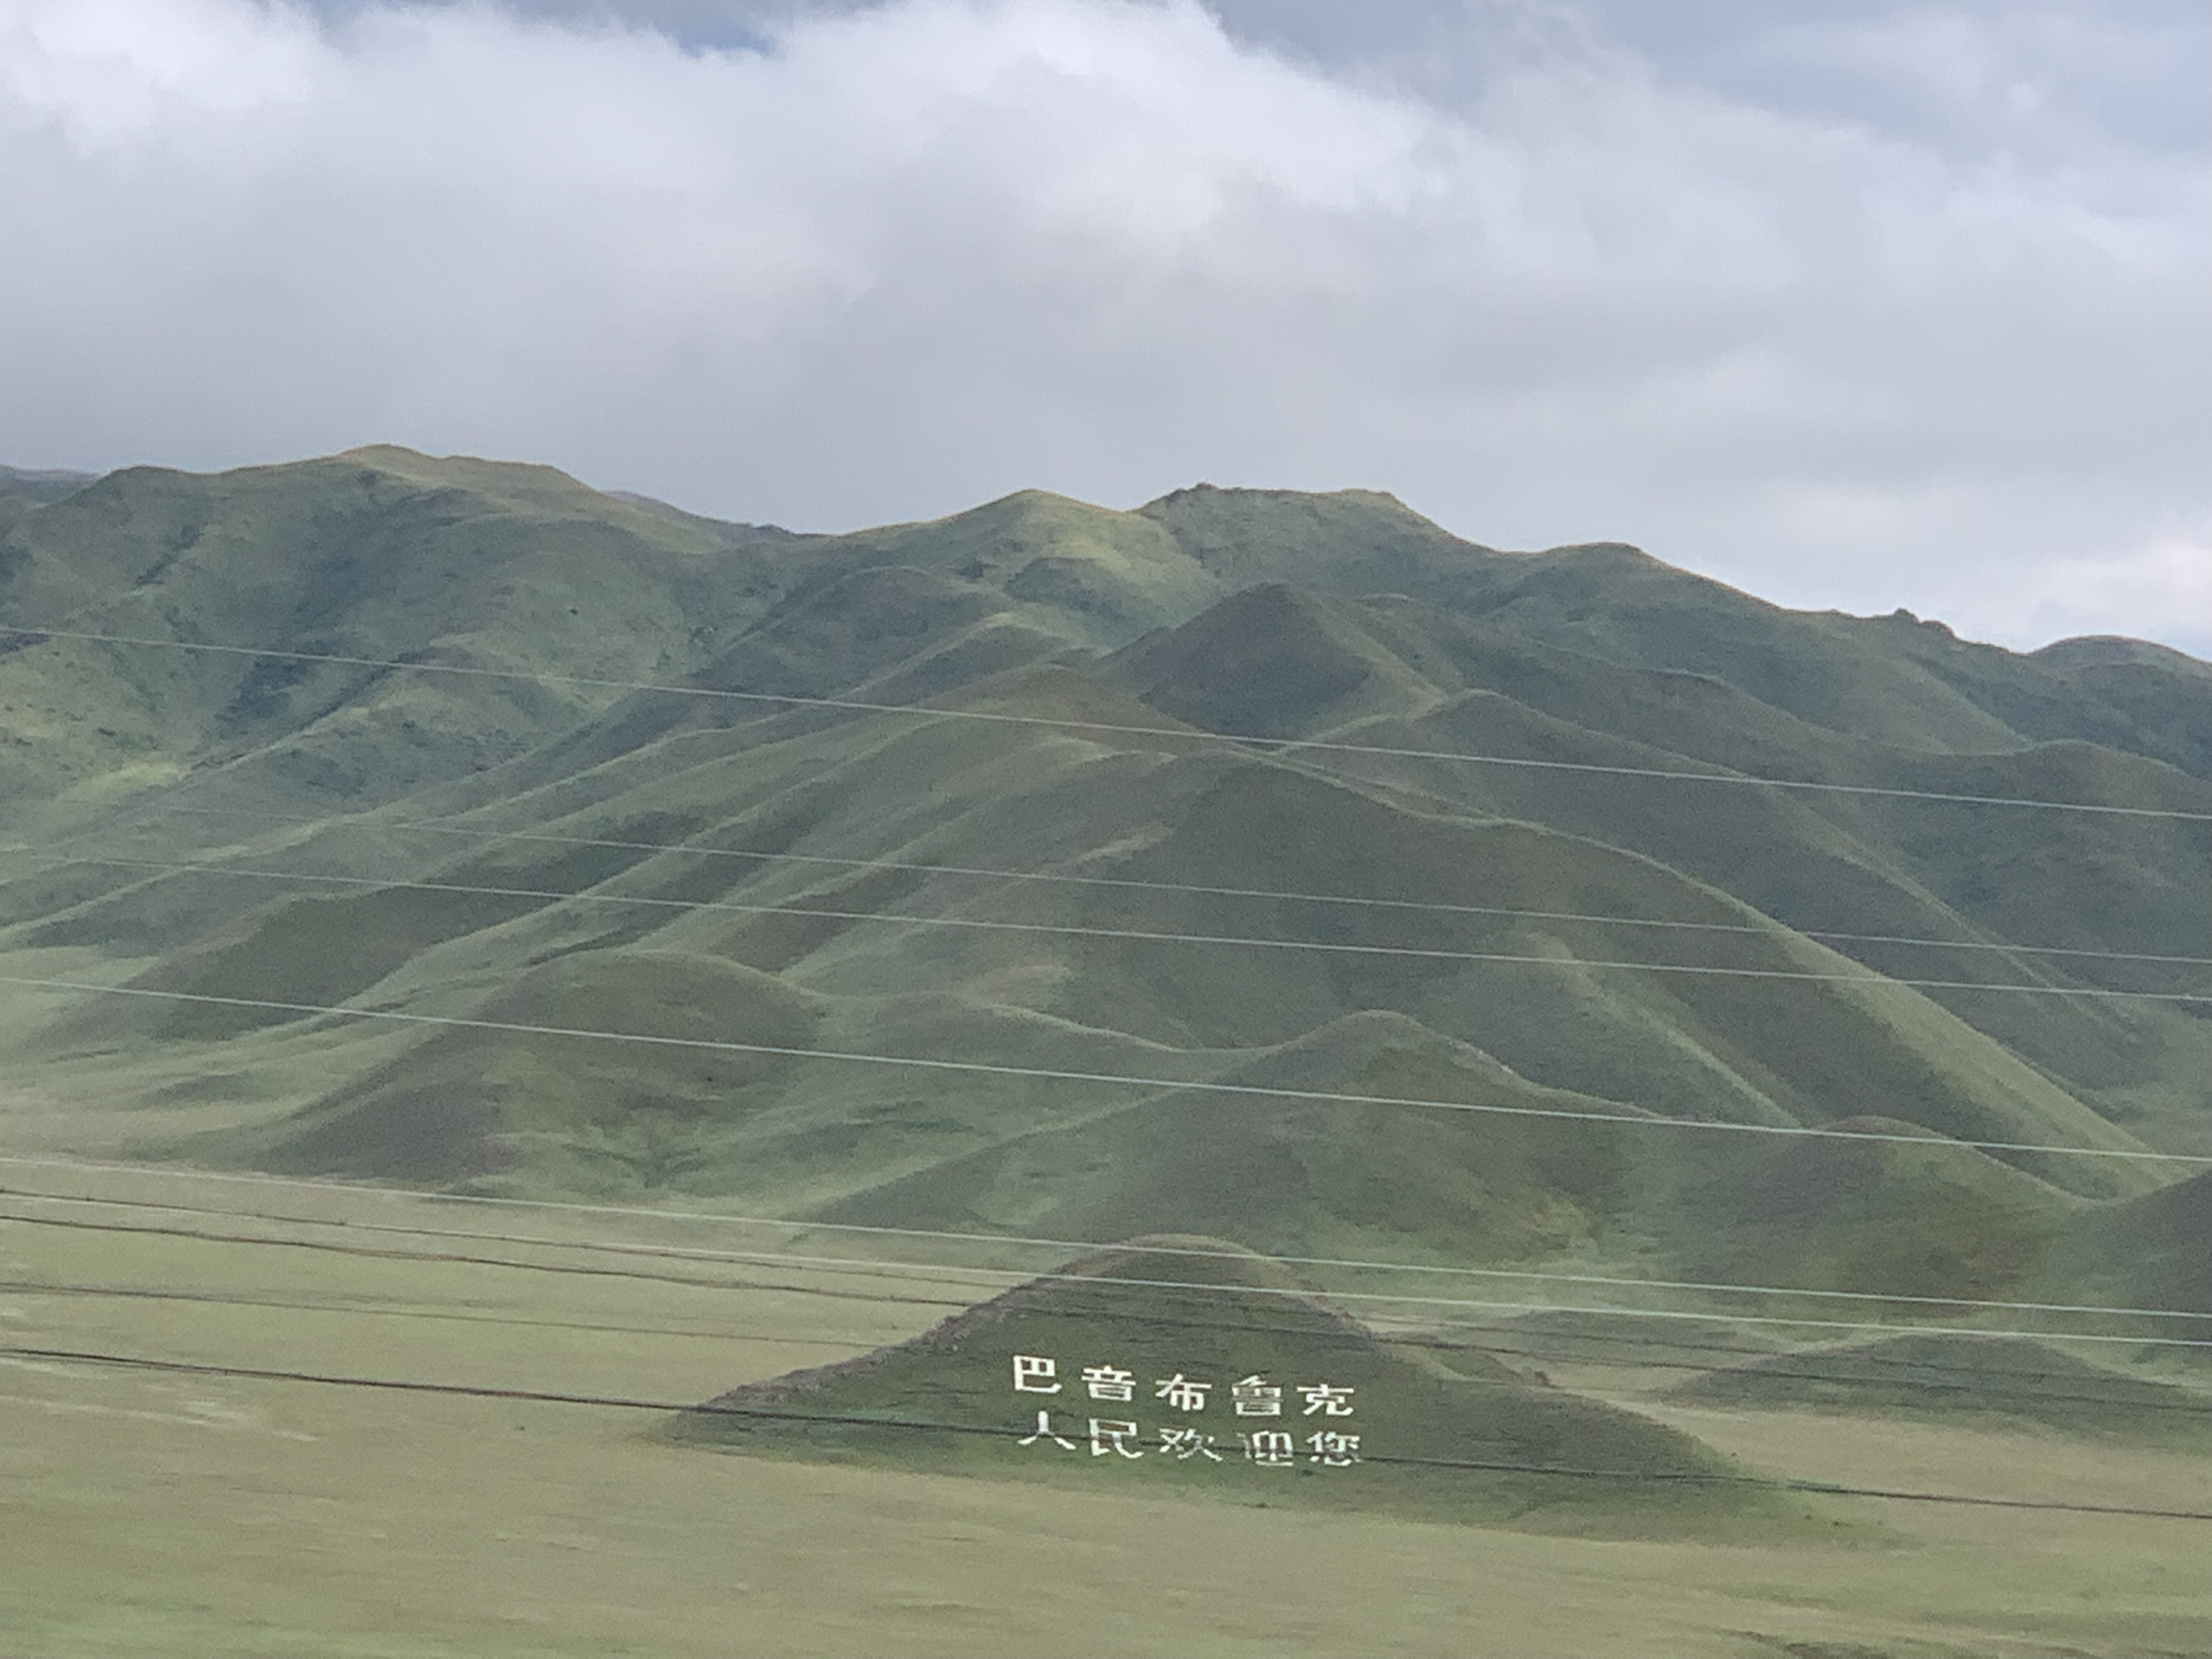 #旅行拍照不露脸  新疆是中国的一个自治区，位于中国的西北部。它辽阔的土地上蕴藏着多样的文化、风景和